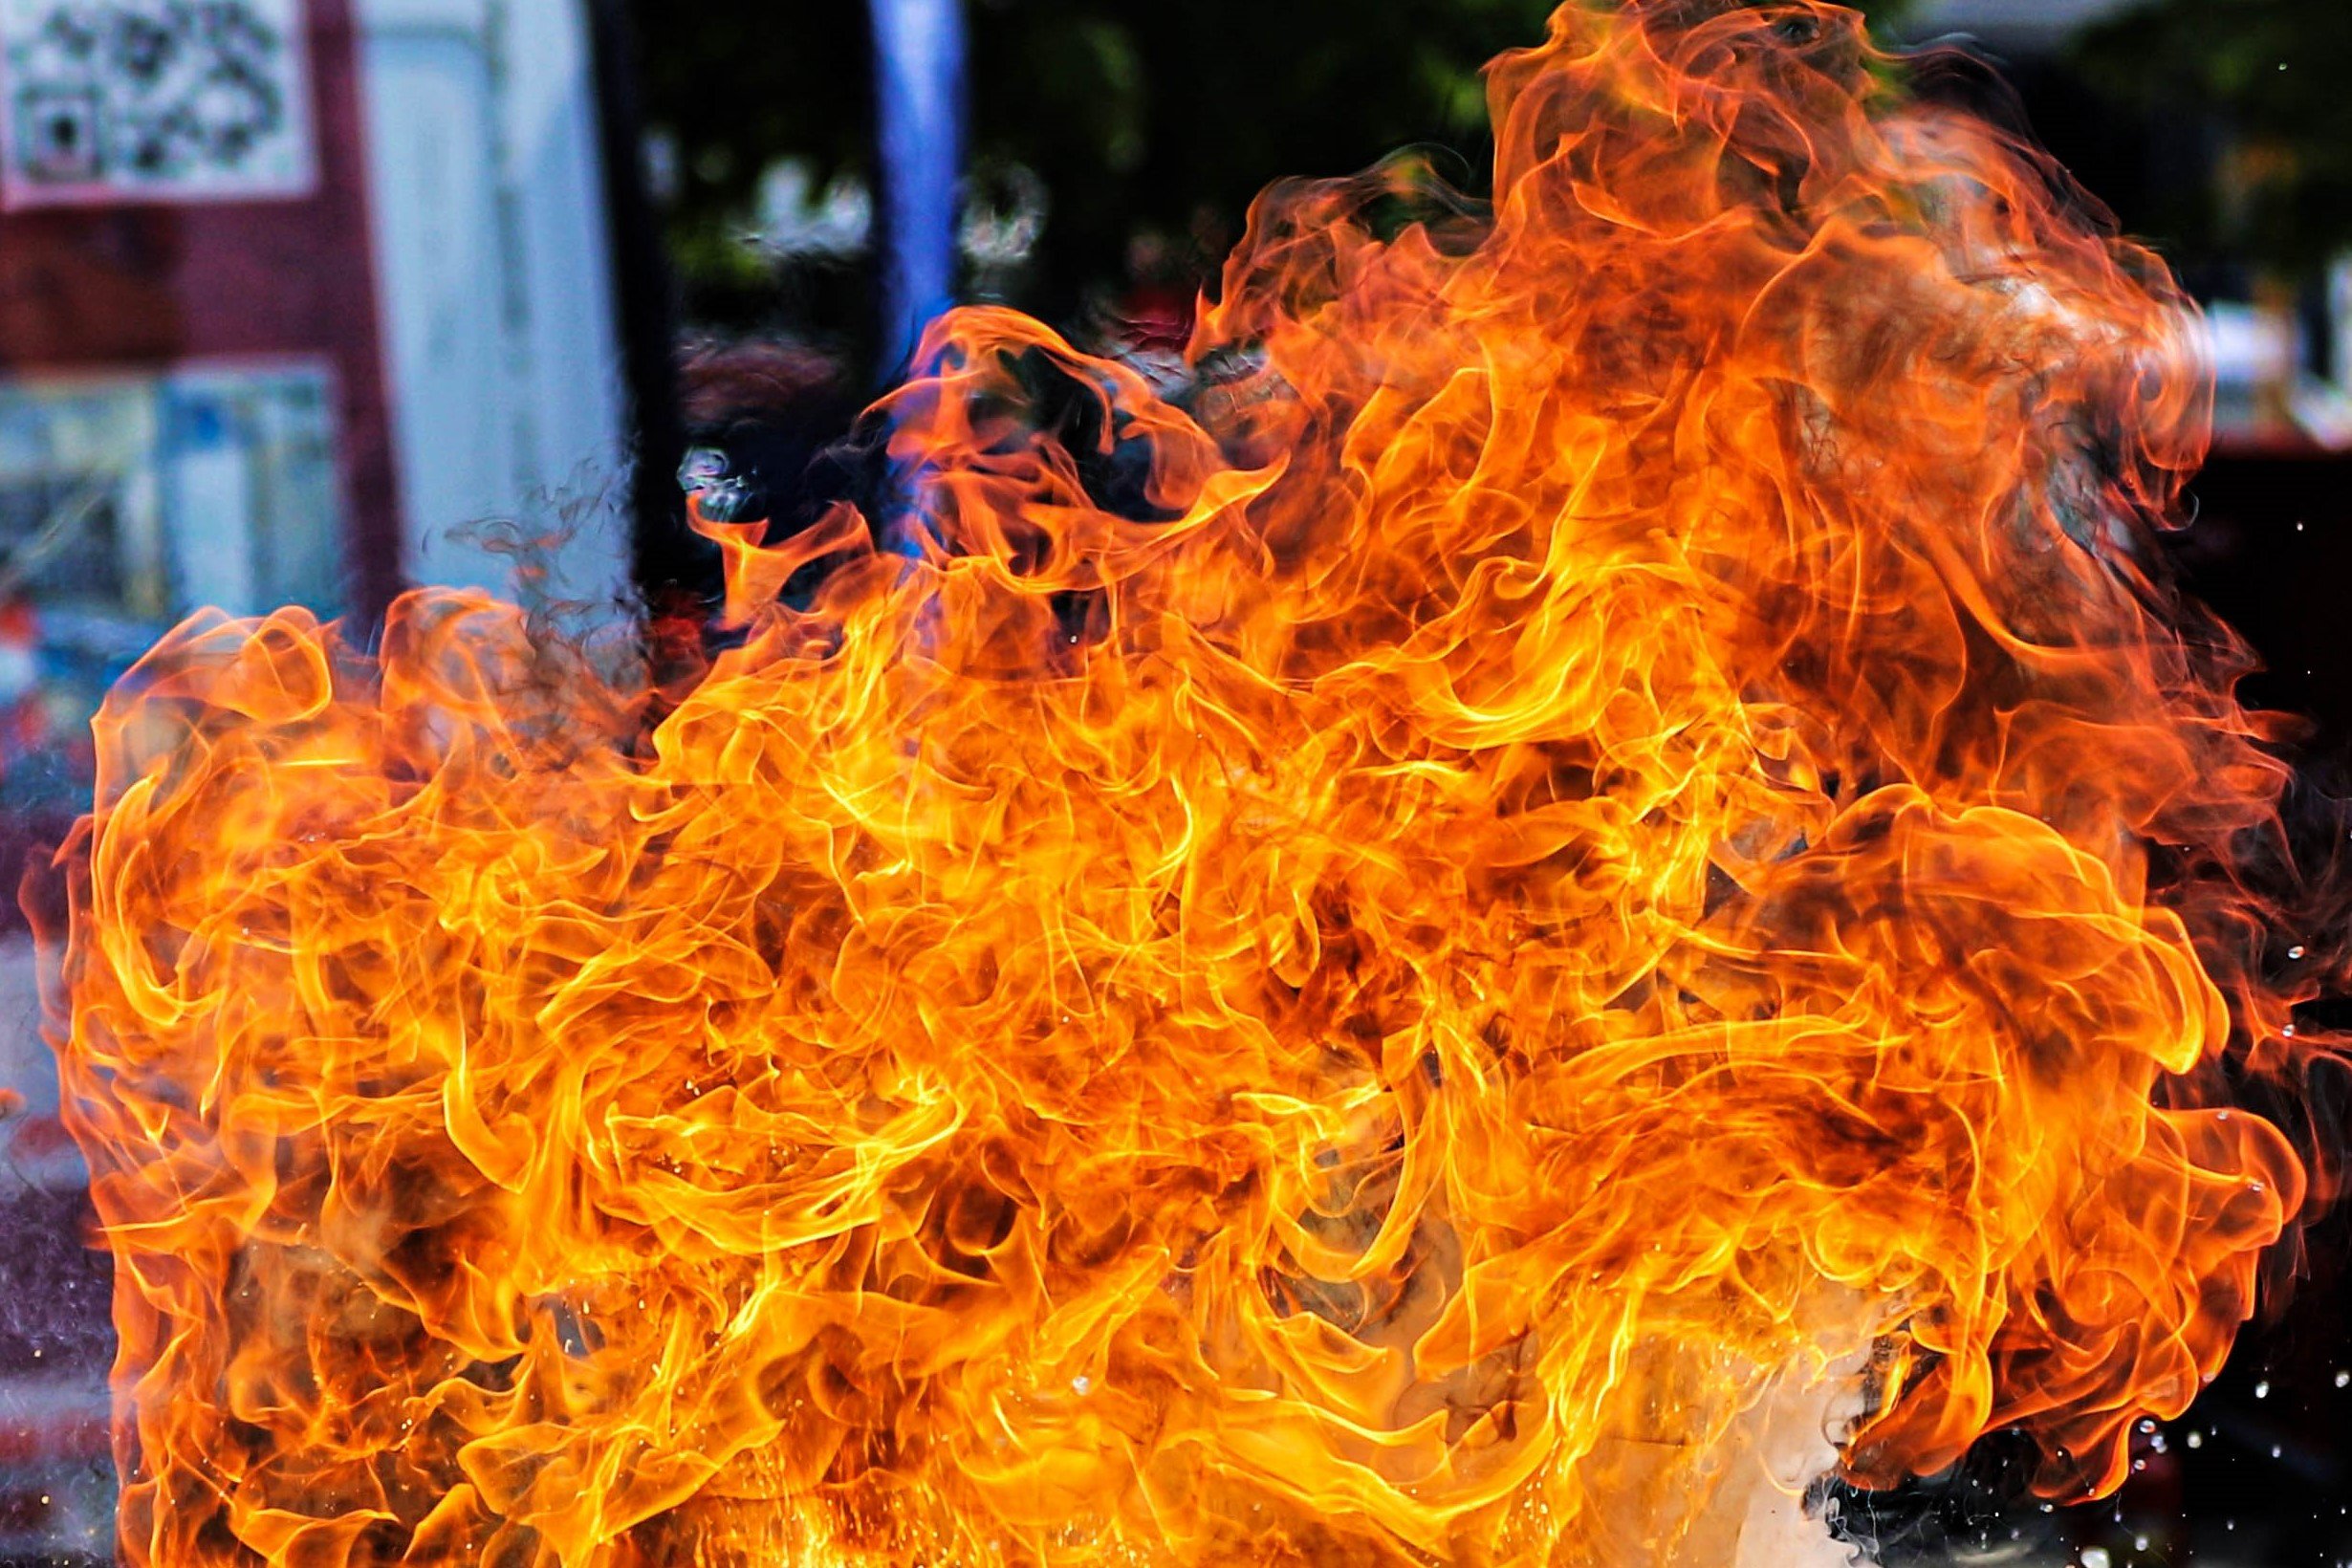 В Люберцах участница фаер-шоу загорелась во время выступления 